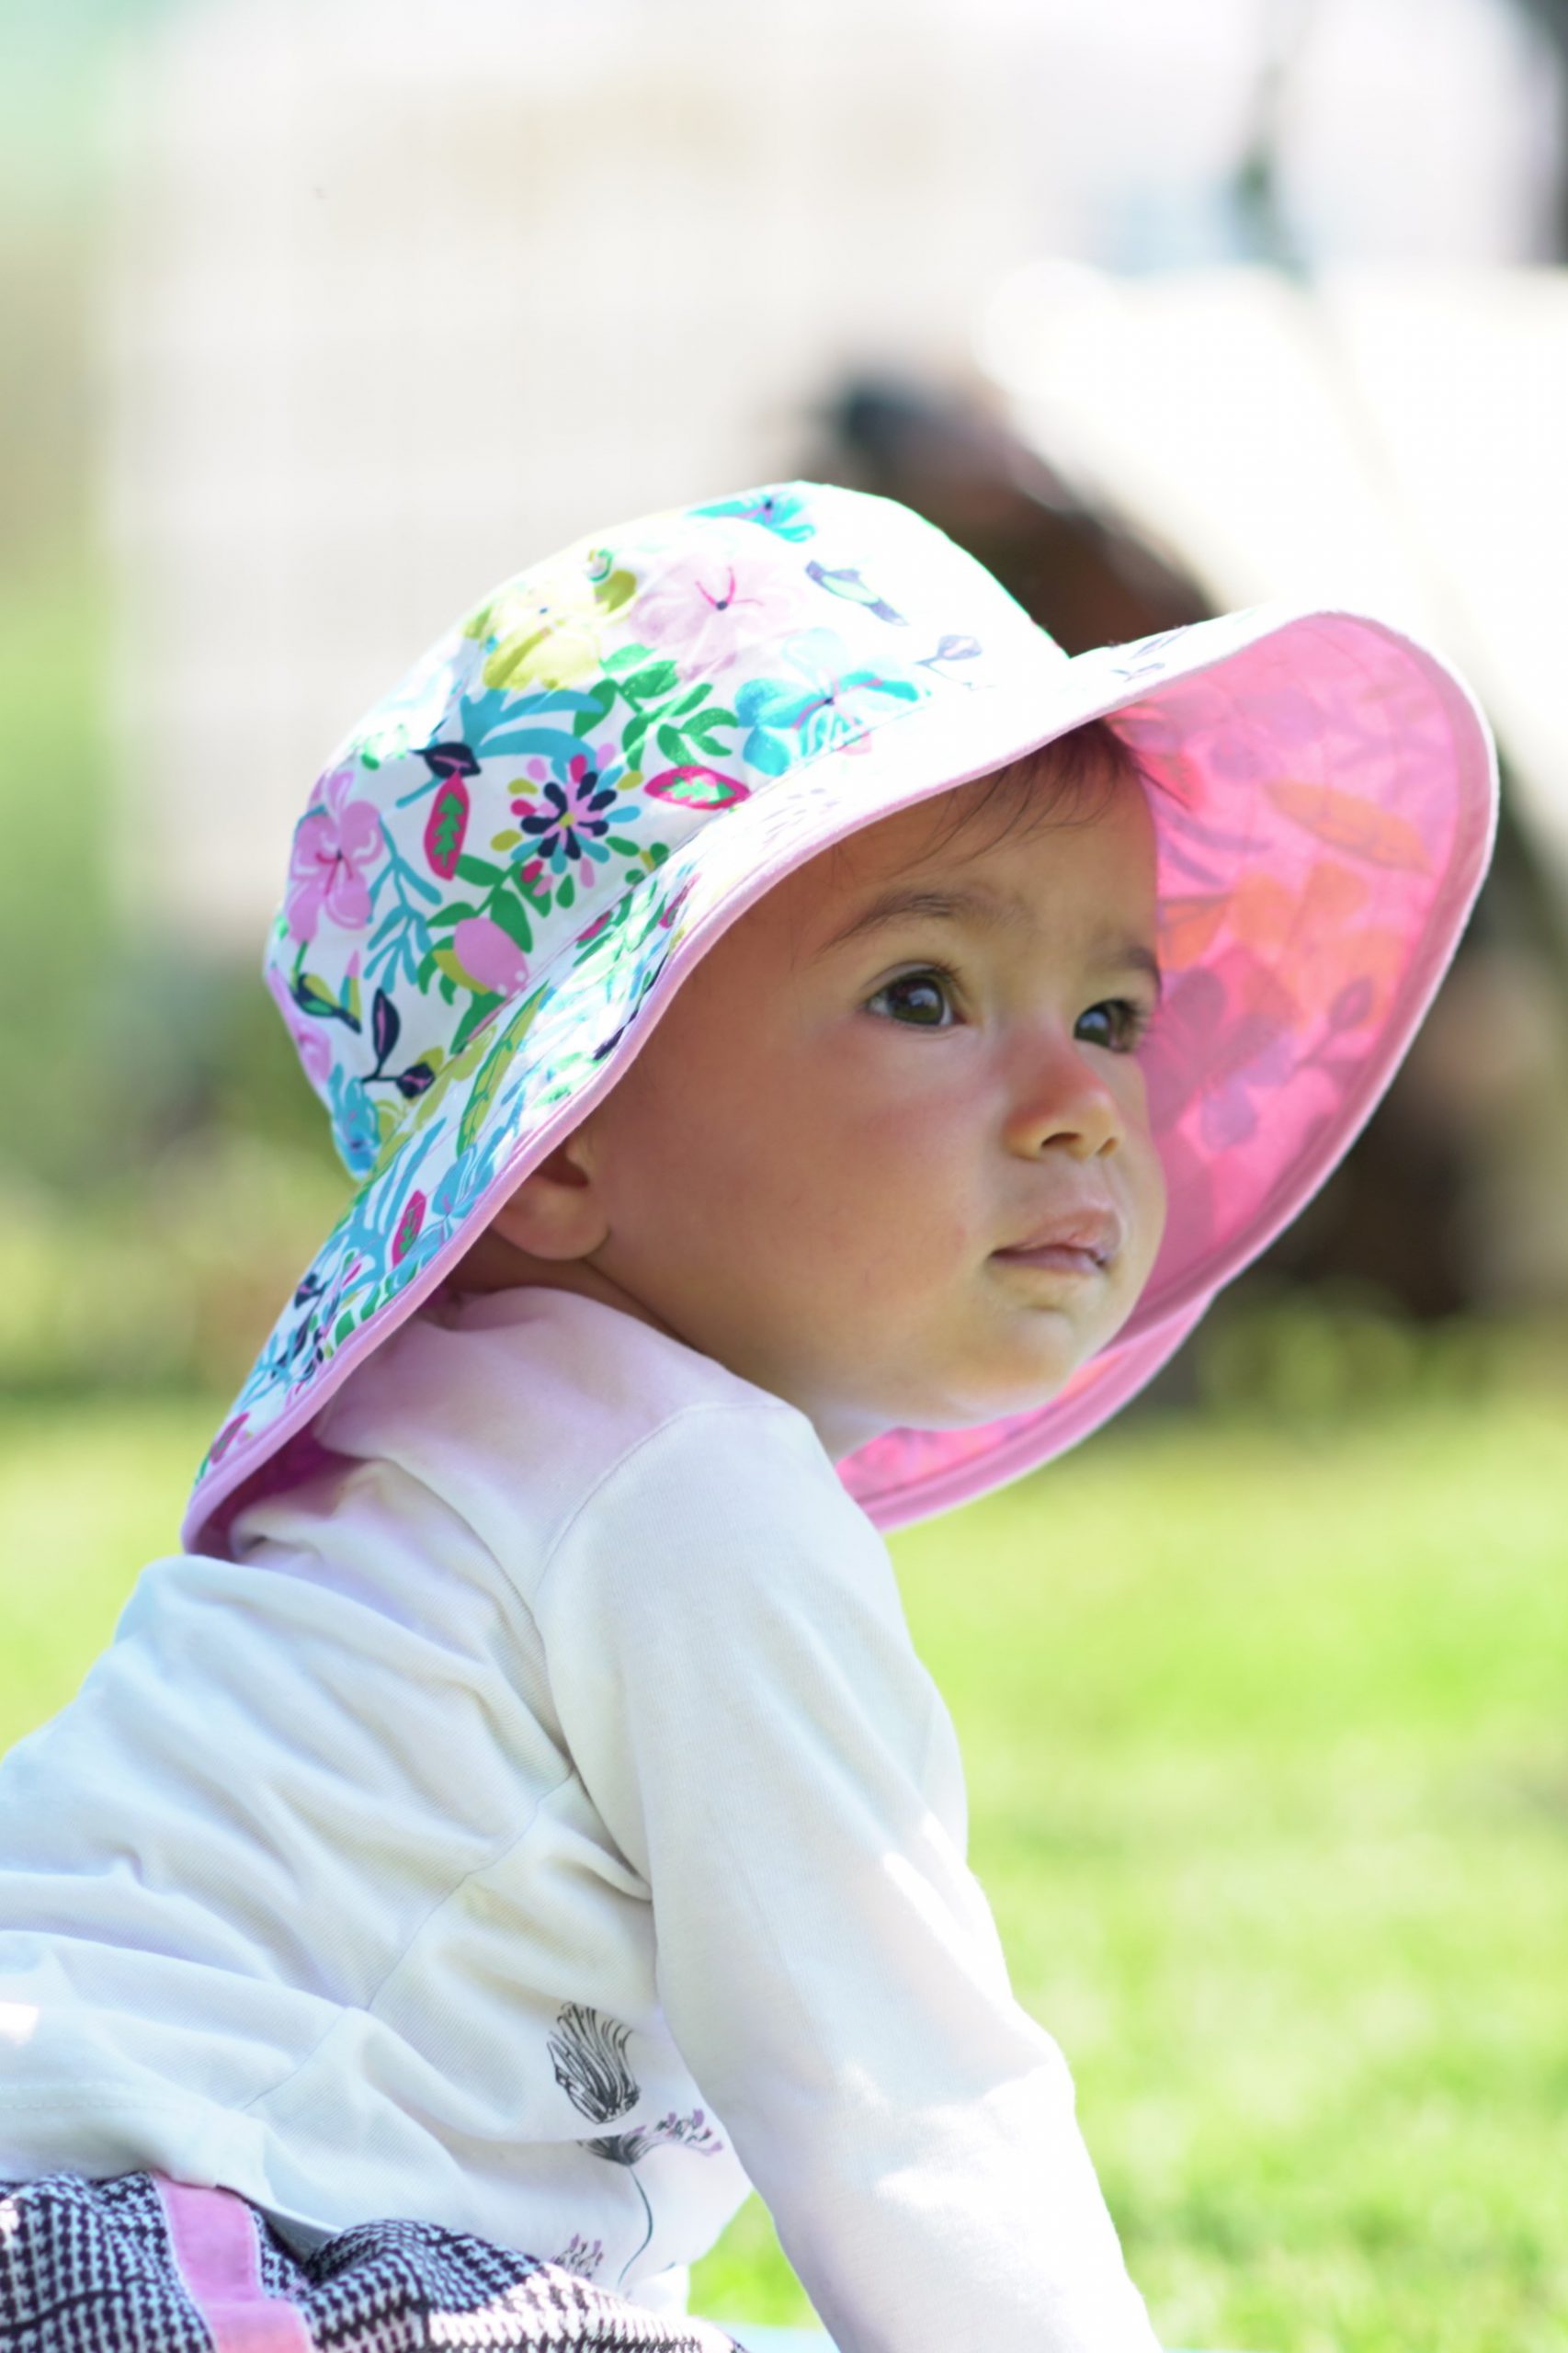 Chapeau de soleil anti-UV spf upf 50+ bébé enfant baby banz réversible évolutif réglable fleurs rose blanc imprimé mignon fille garçon